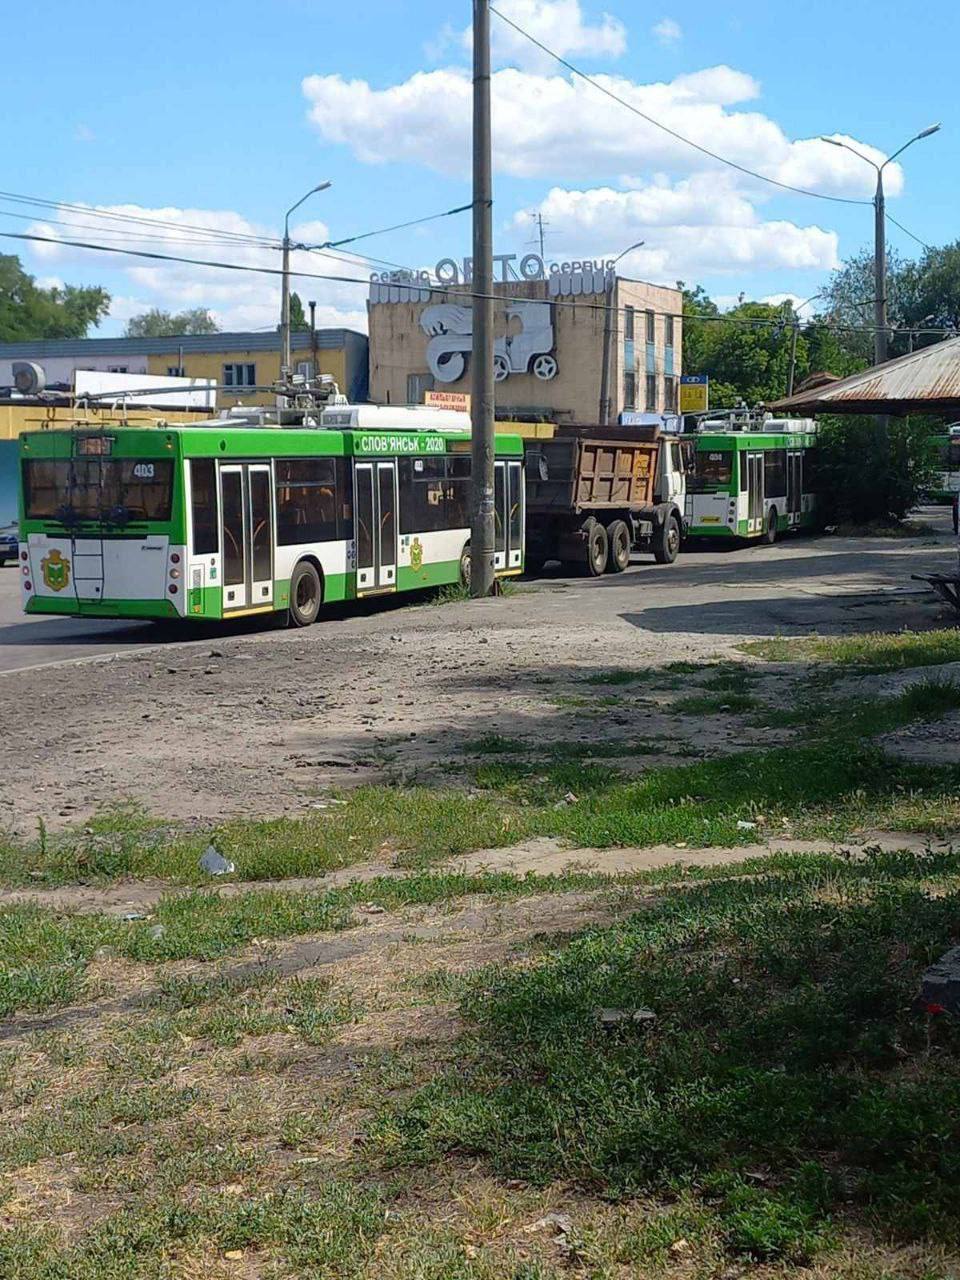 Телеграм-каналы Славянска пишут, что из города вывезли троллейбусы. Согласно сообщениям, их увезли в сторону Днепра